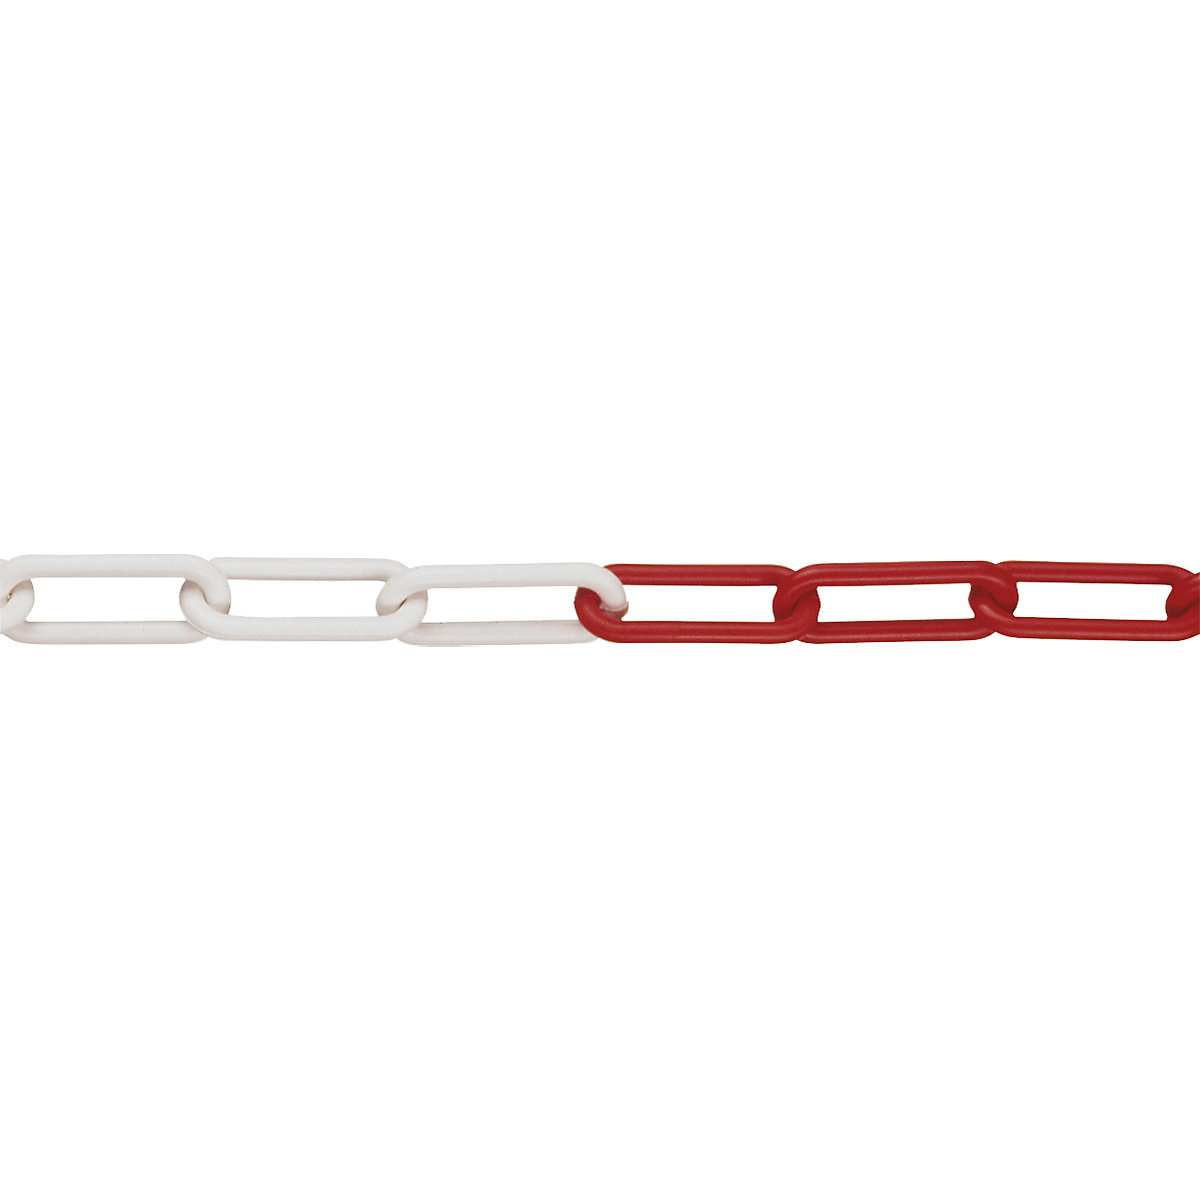 PE lanac s karikama, debljina karika 6 mm, dužina sklopa 50 m, u crveno-bijeloj boji, od 4 komada-2